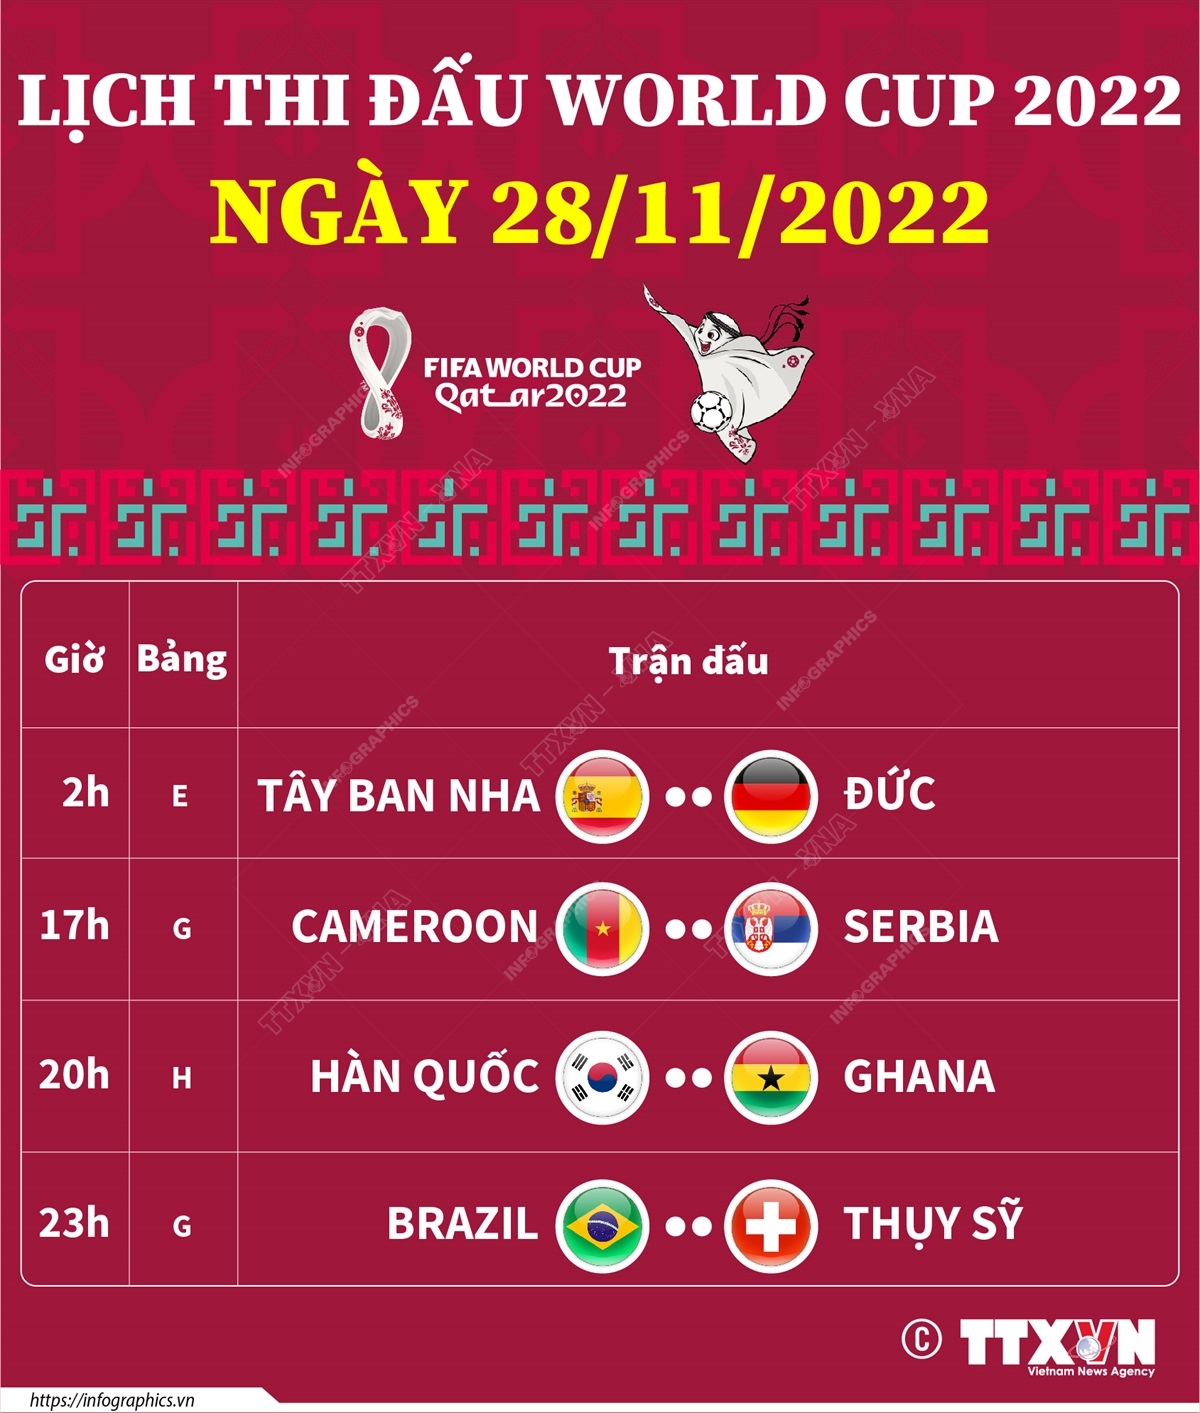 Lịch thi đấu World Cup 2022 ngày 28/11/2022 | baotintuc.vn